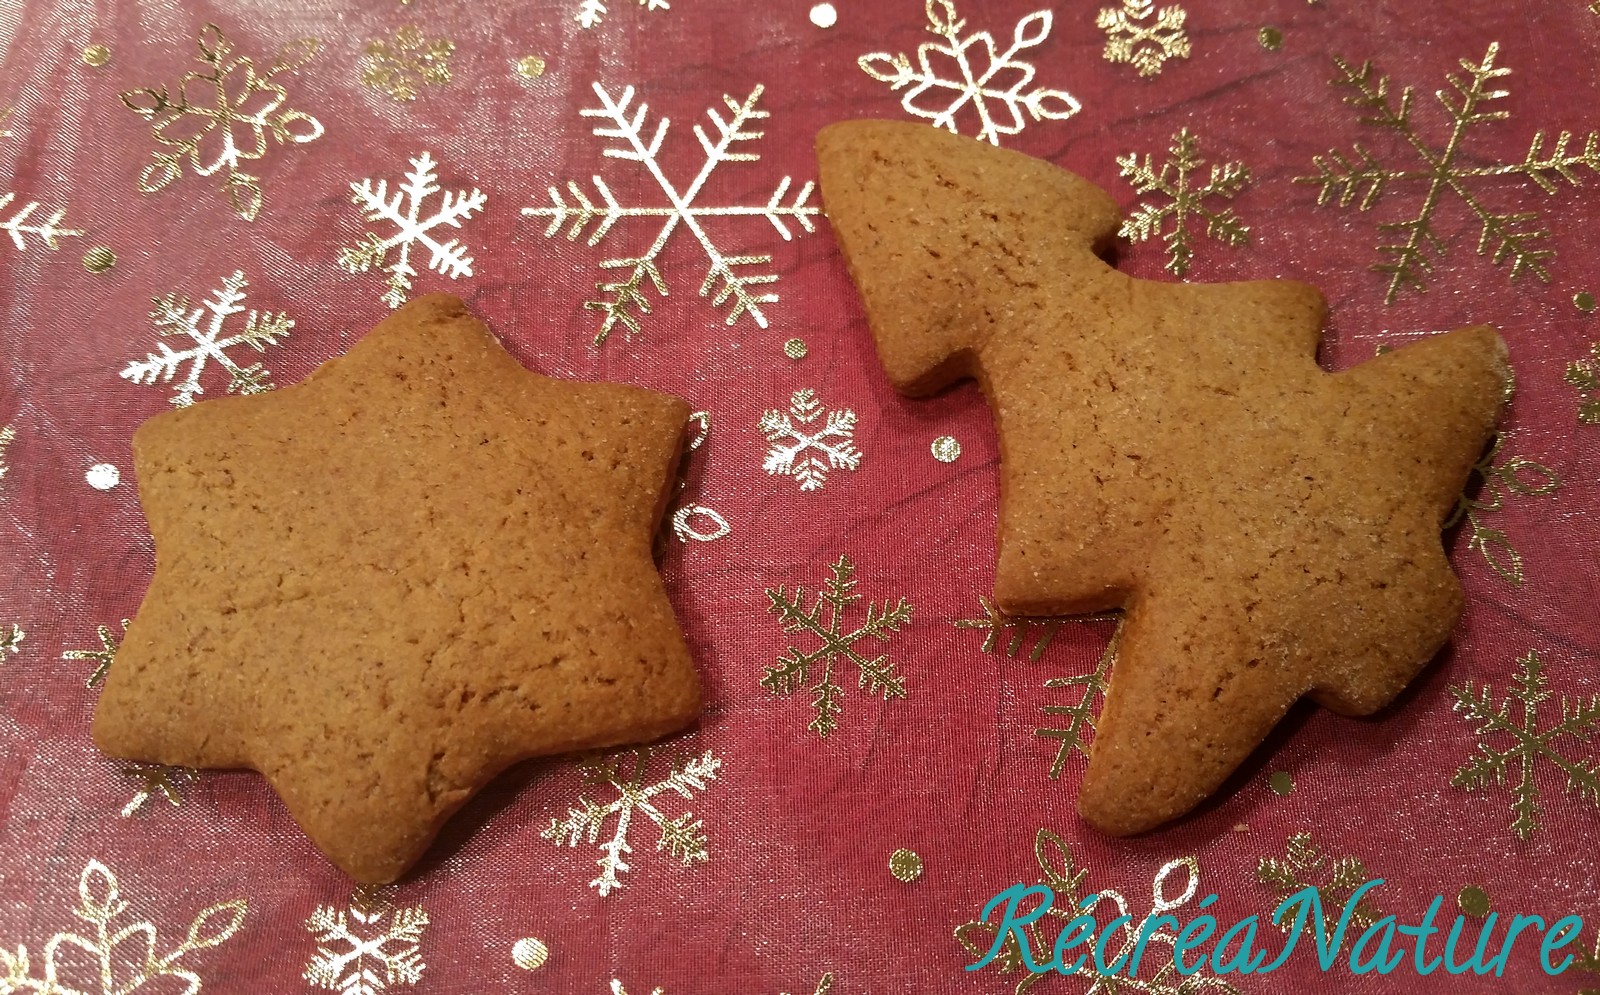 Recette Biscuits de Noël cannelle et gingembre